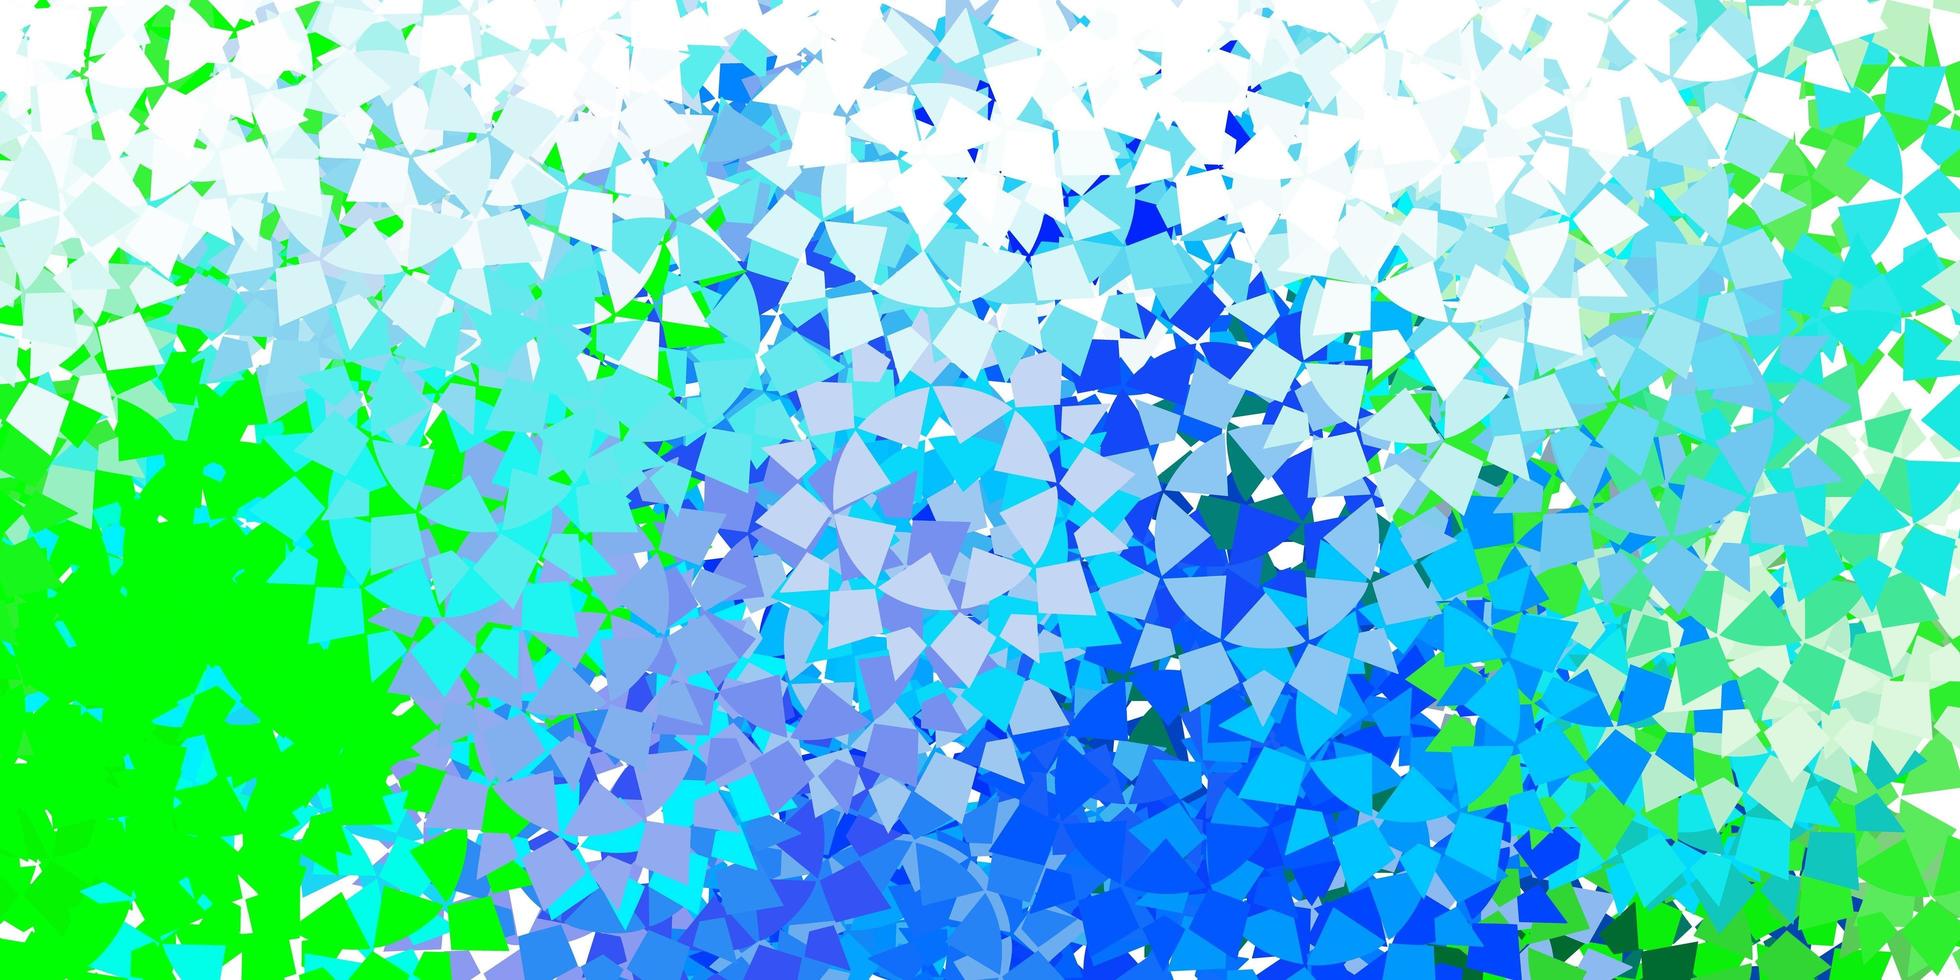 modelo de vetor azul claro com cristais, triângulos.